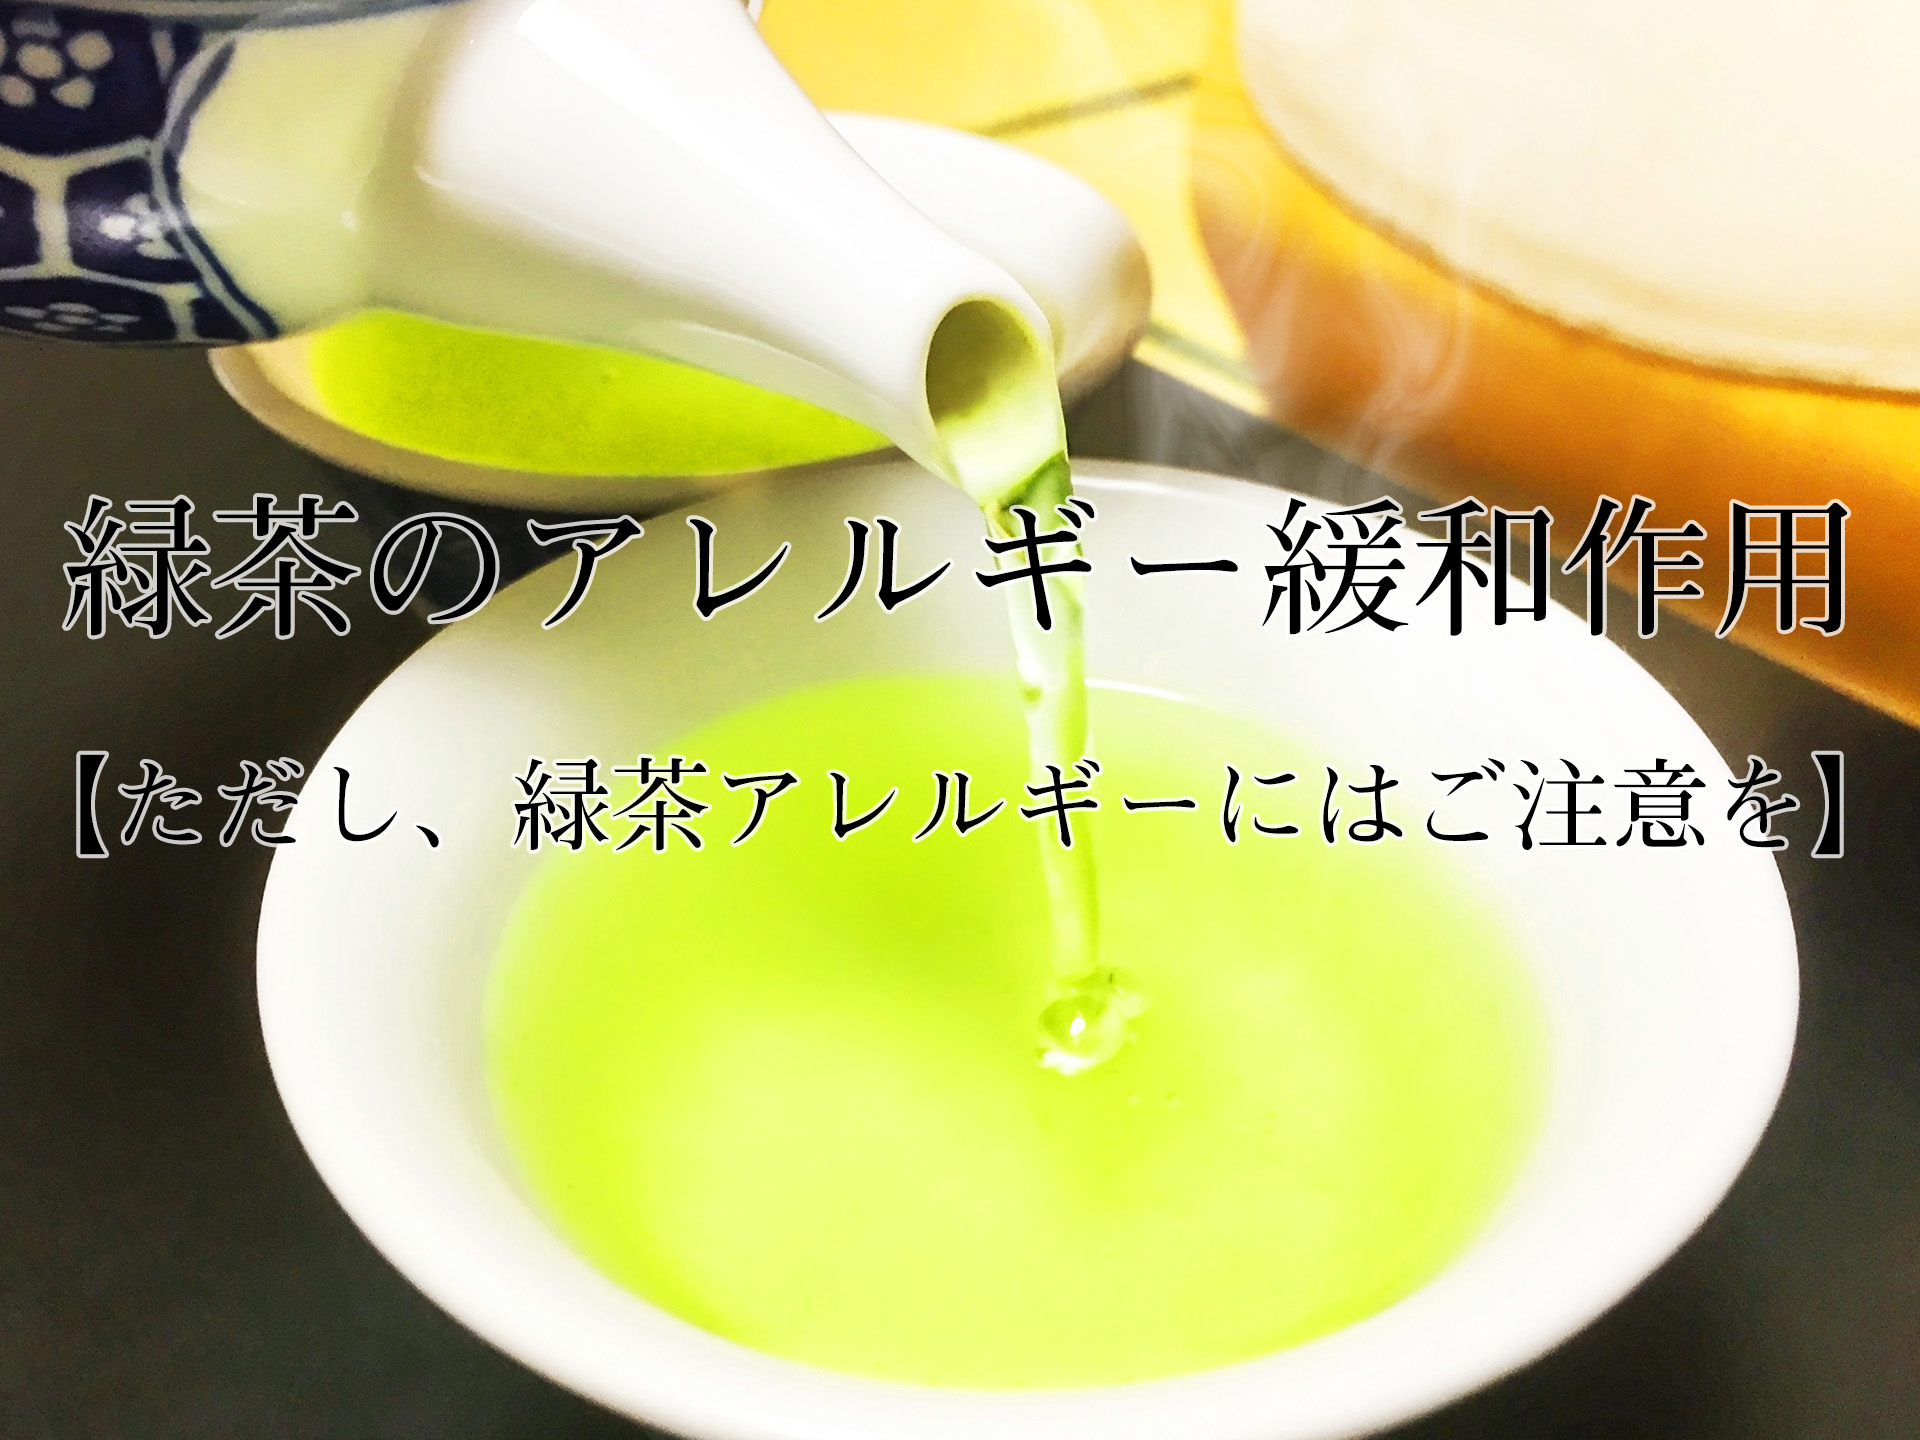 緑茶のアレルギー緩和作用【ただし、緑茶アレルギーにはご注意を】